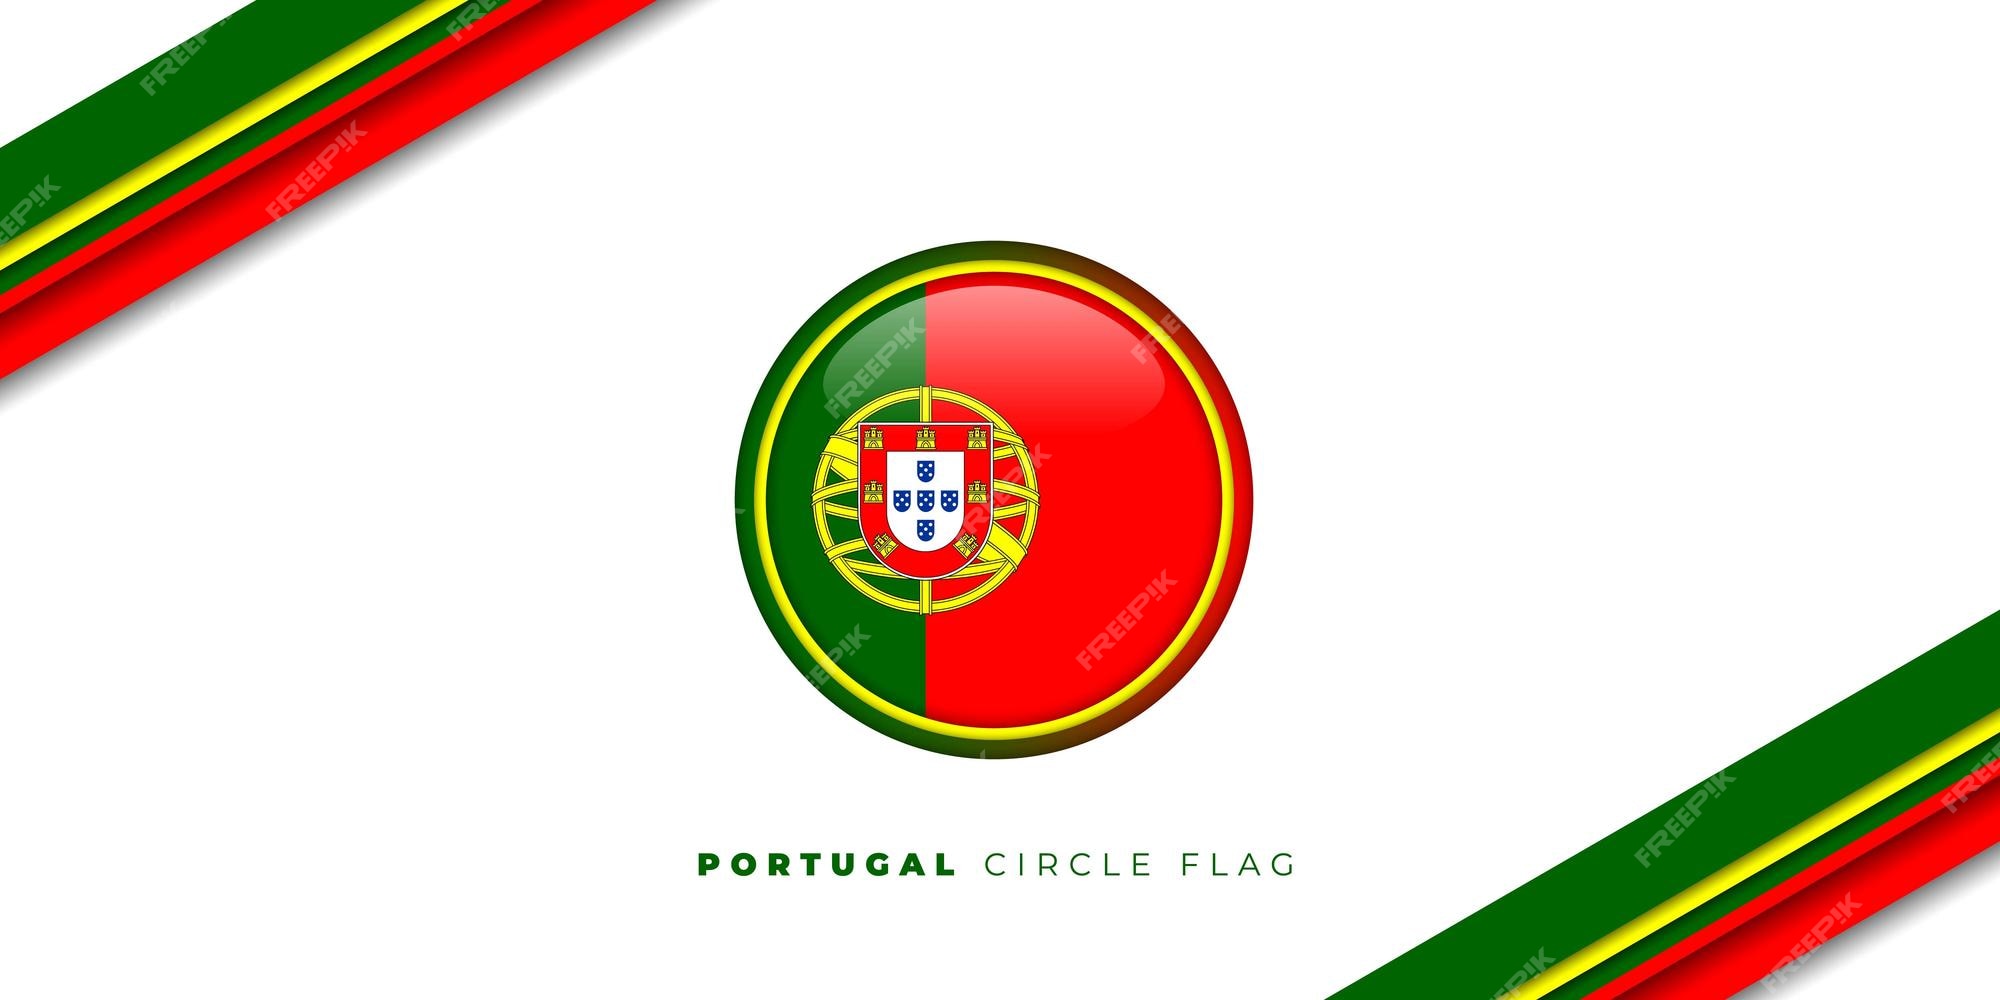 Hình ảnh chiếc cờ tròn của Bồ Đào Nha sẽ khiến bạn thích thú đấy! Với màu đỏ và xanh lá cây, cờ quốc kỳ này rất đặc trưng và được yêu thích ở châu Âu. Hãy khám phá ngay!